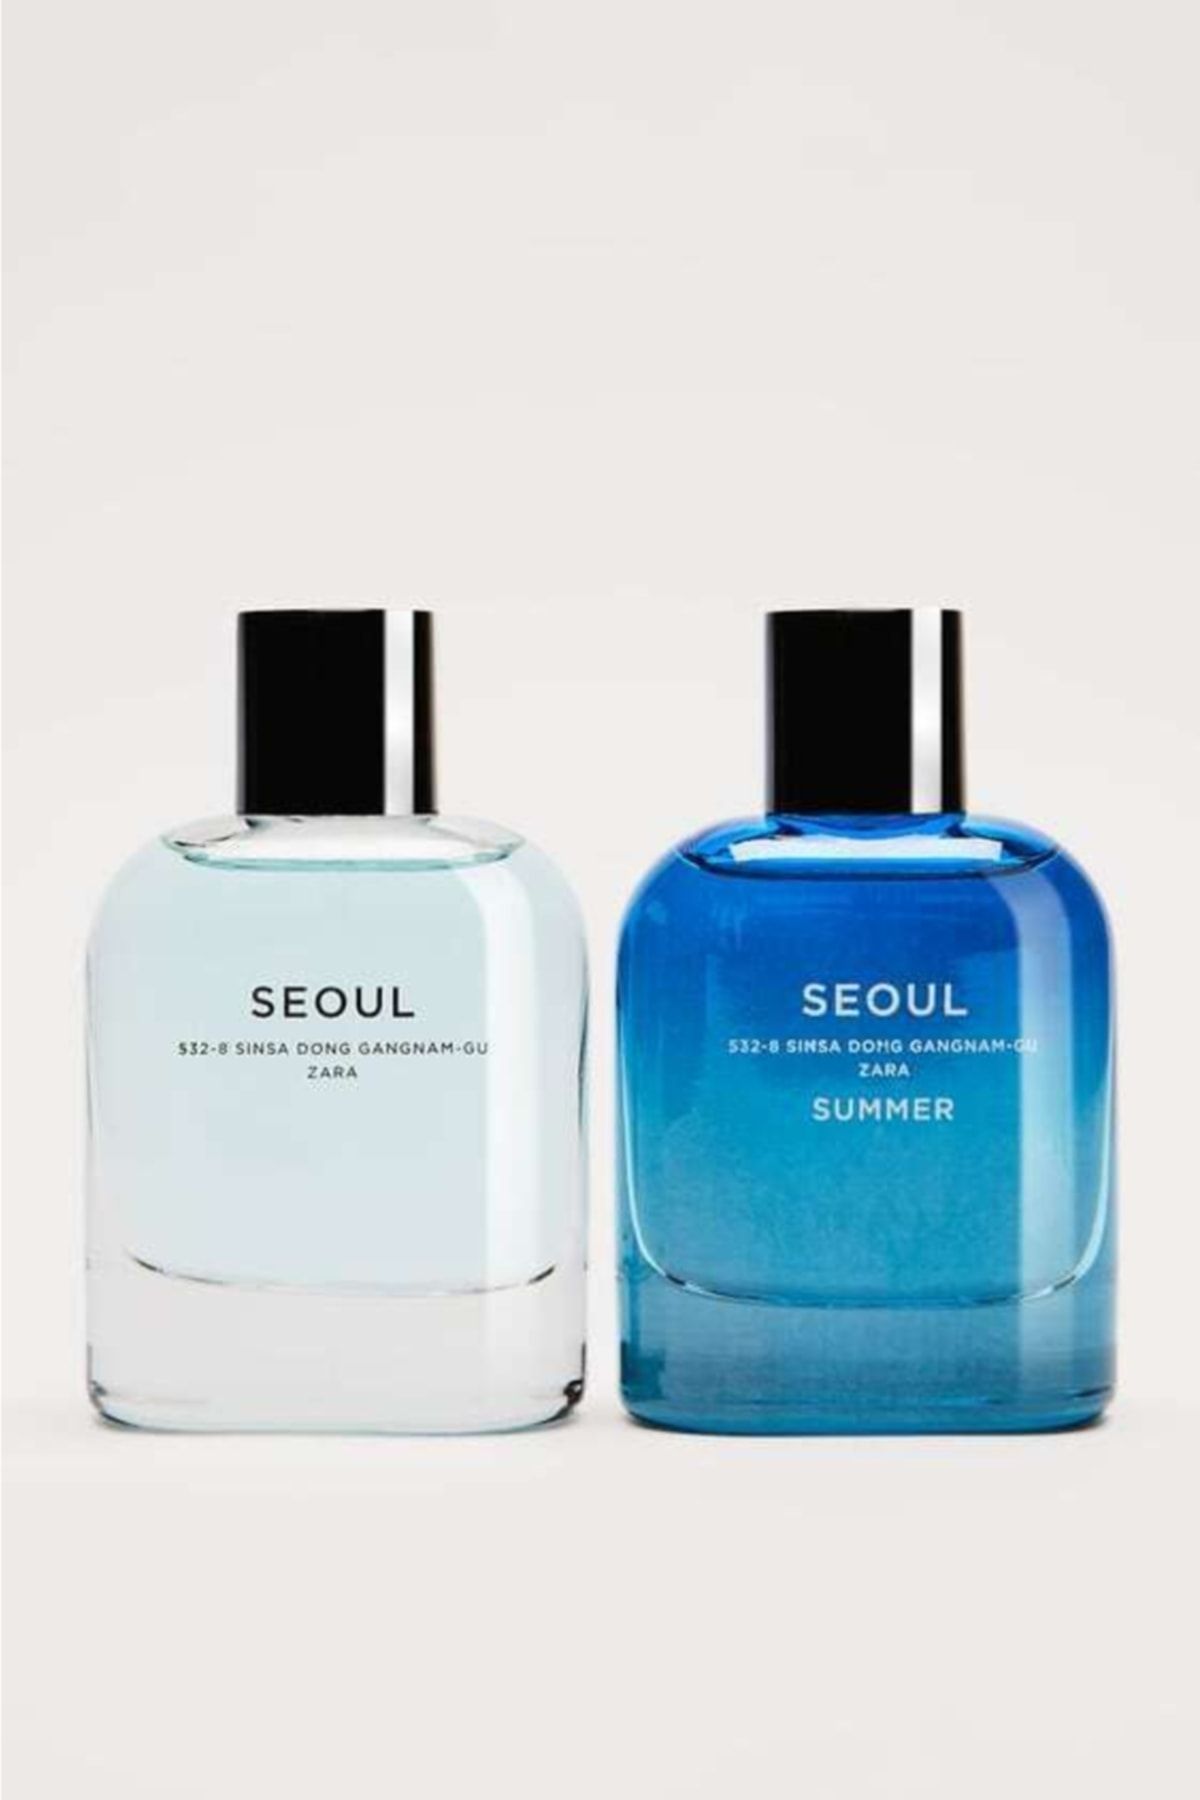 Zara Seoul Seoul Summer 80ml Edt Indirim Şehri Erkek Parfüm Seti